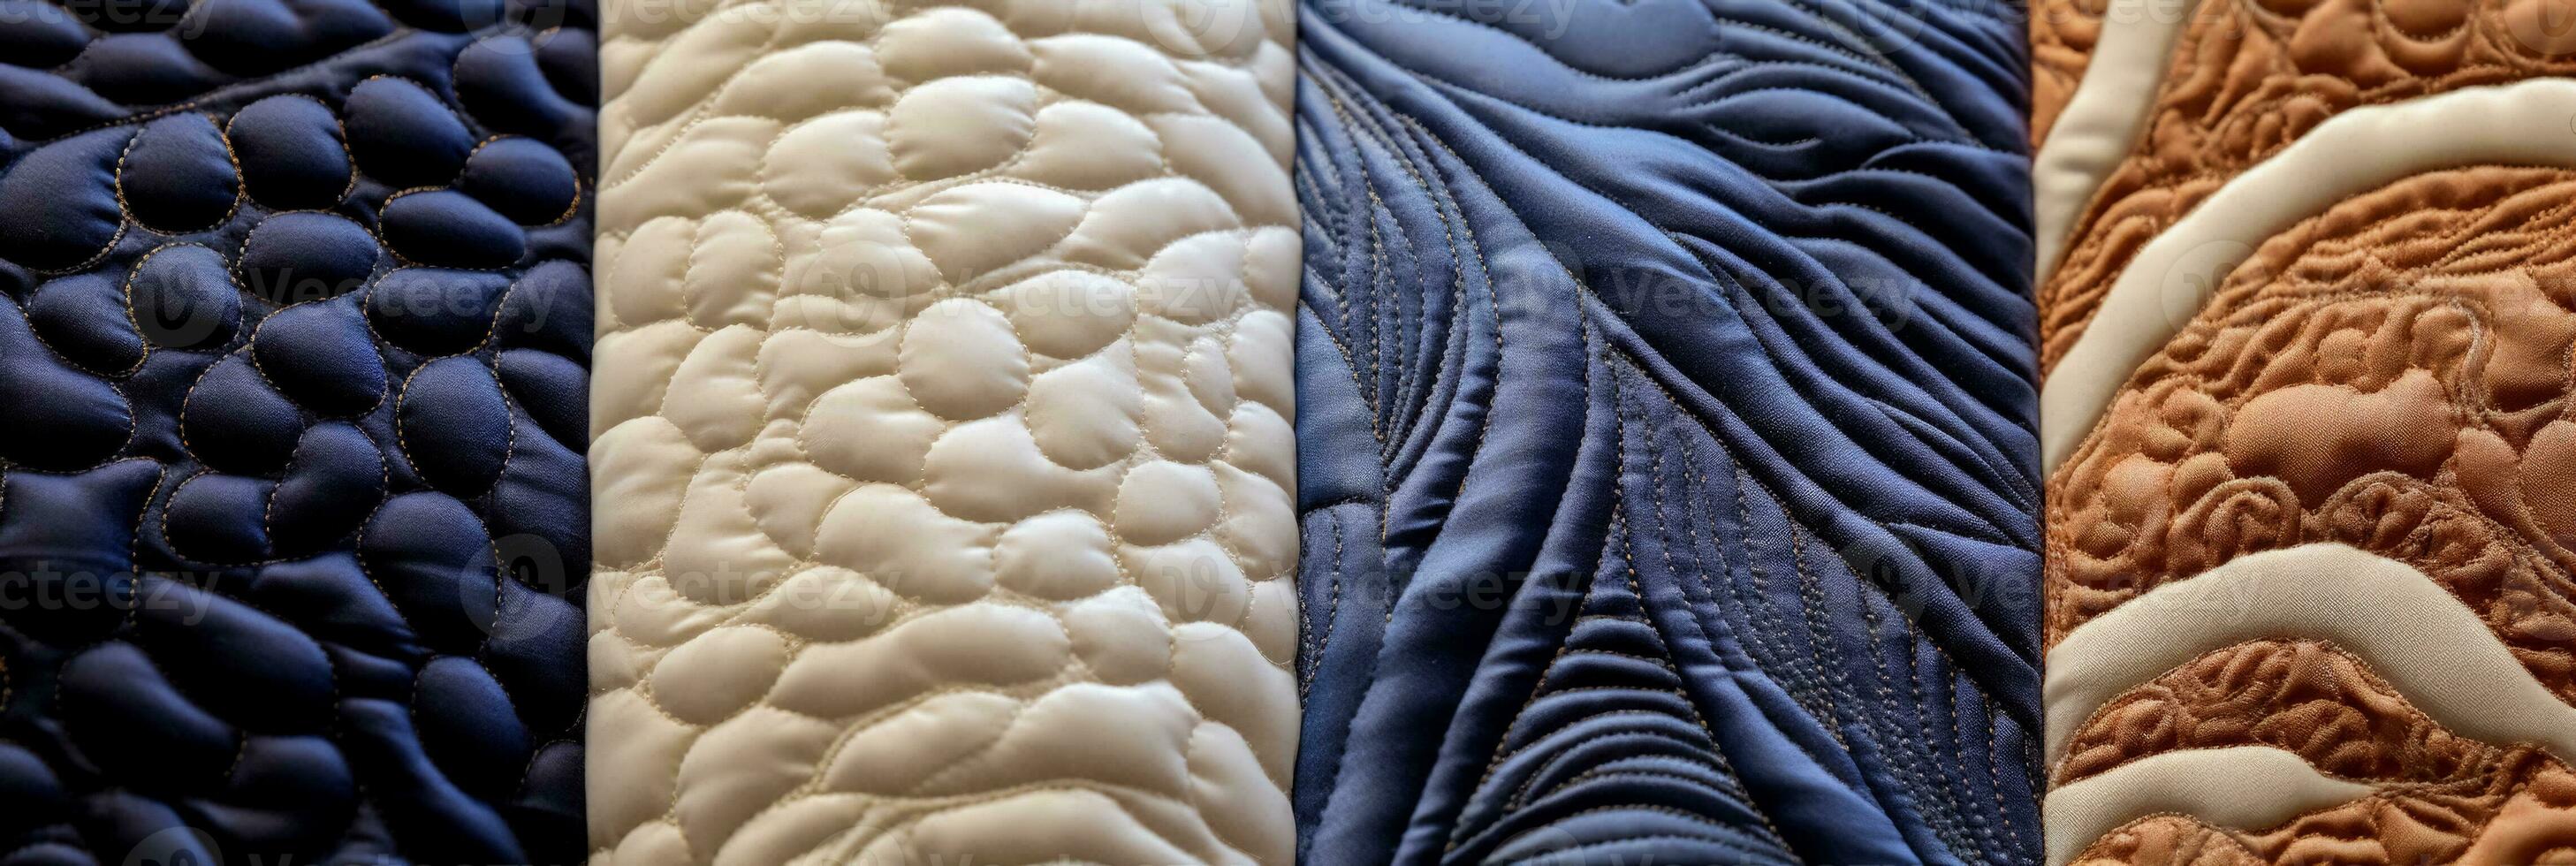 extremo cerca UPS capturar el intrincado patrones de textural acolchado en textiles foto